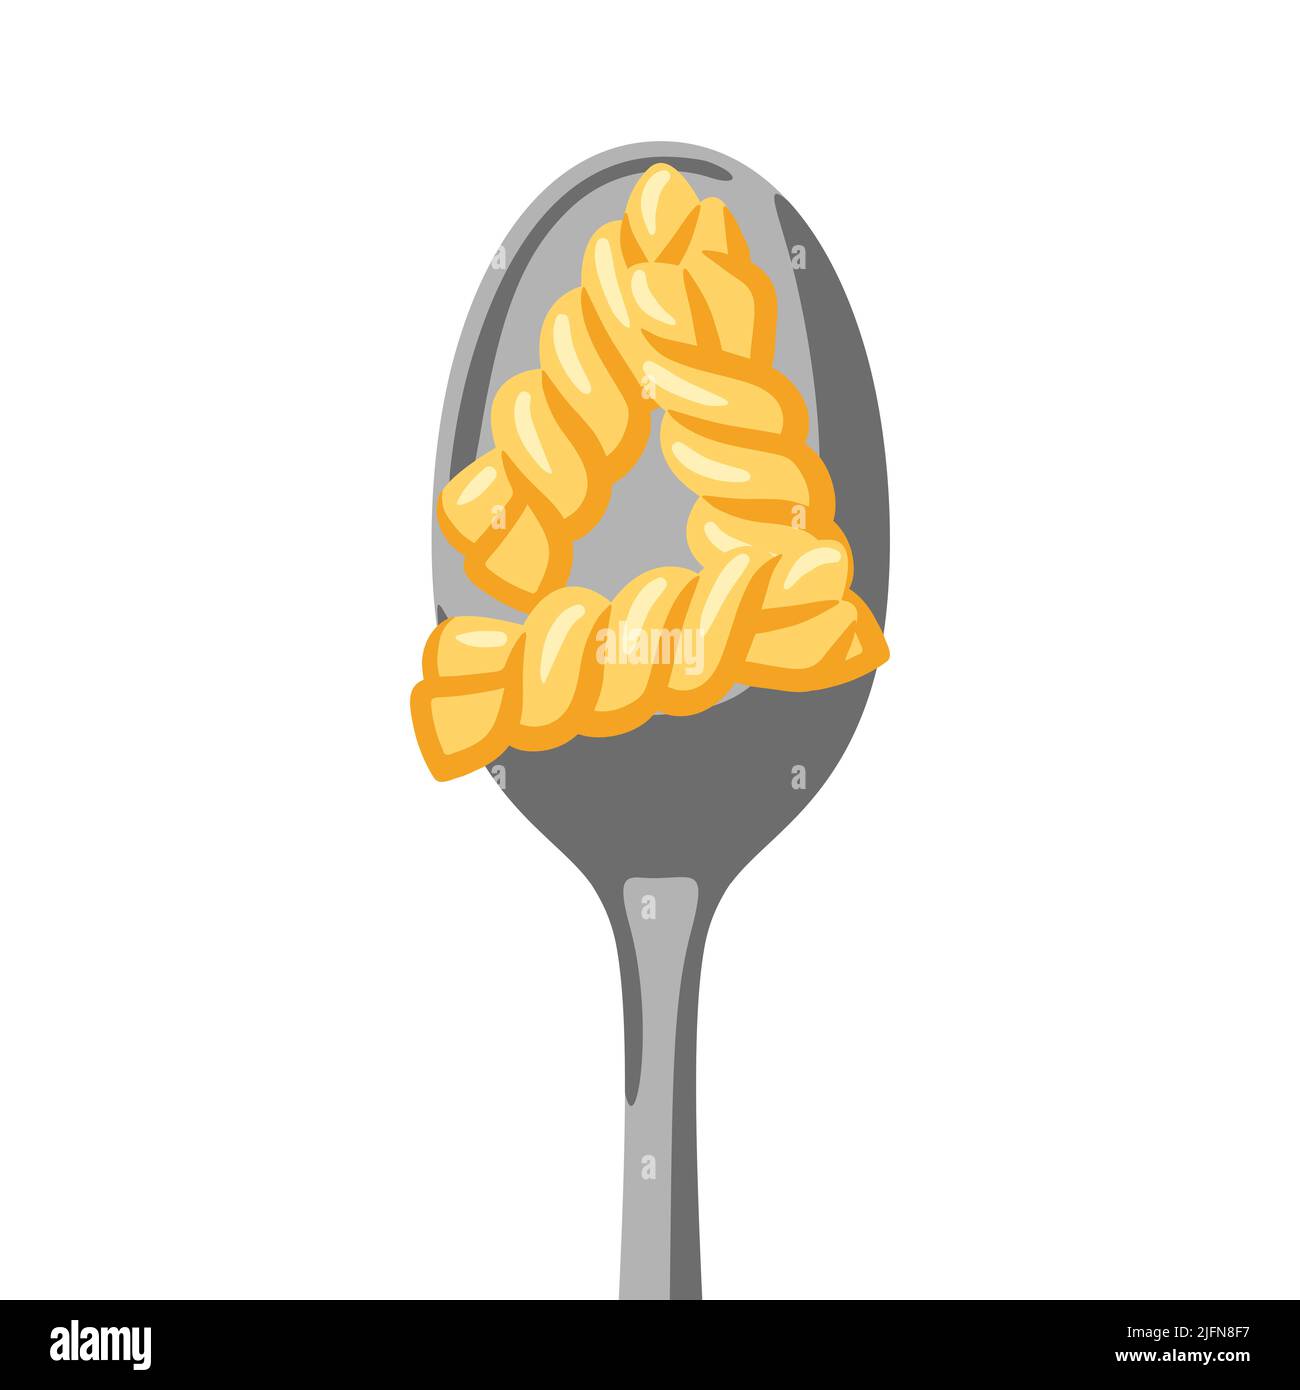 Illustrazione della pasta italiana sul cucchiaio. Immagine culinaria per il menu di caffè e ristoranti. Illustrazione Vettoriale